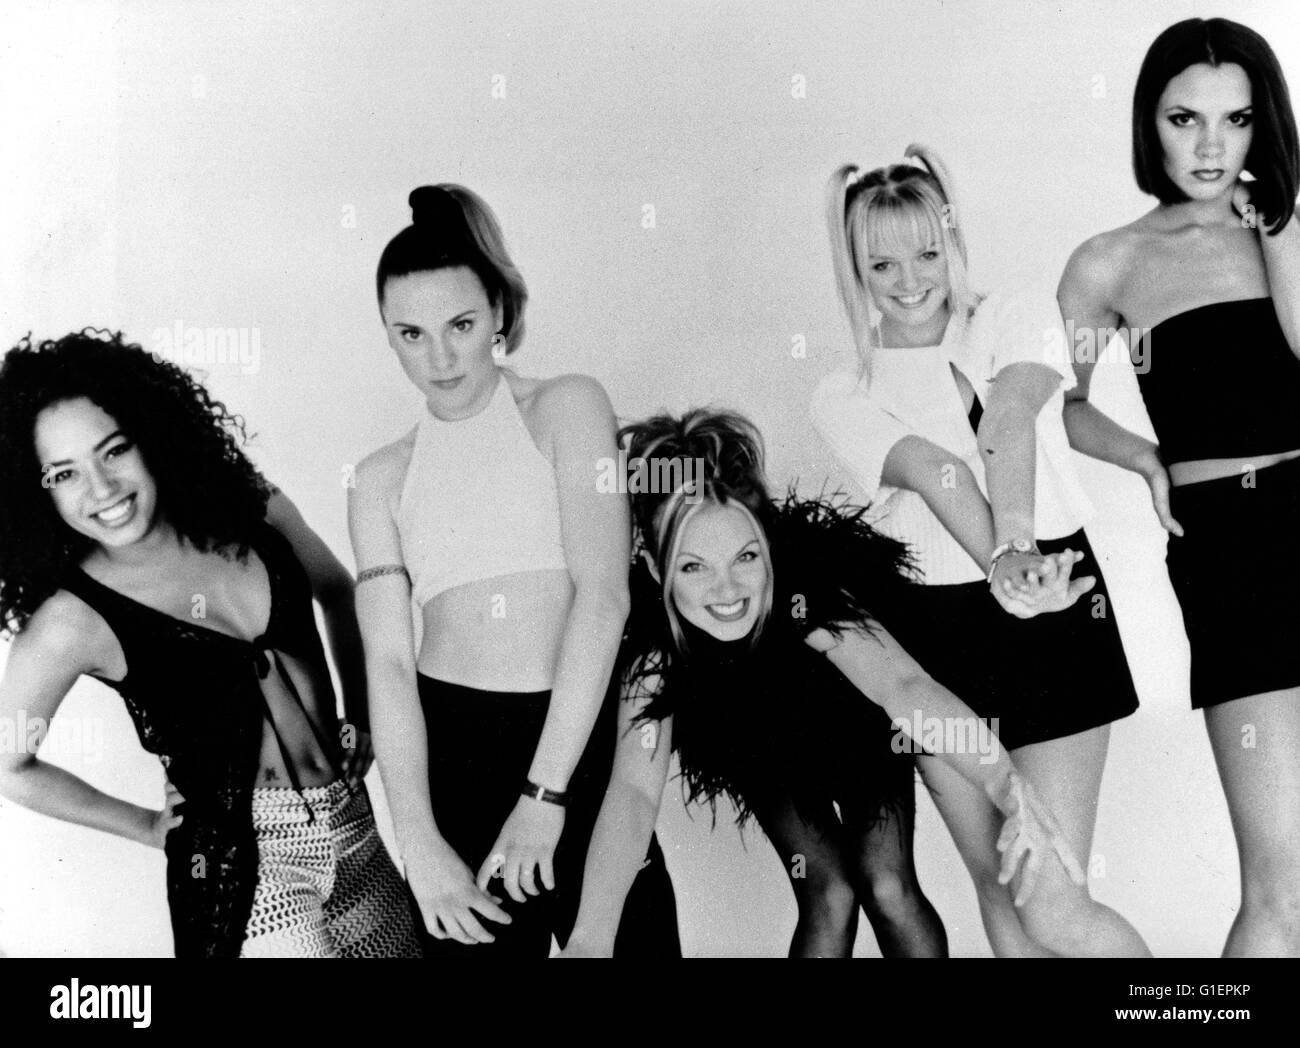 Die britische Girlband Spice Girls, bestehend aus Victoria Adams, Melanie Brown, Emma Bunton, Melanie Chisholm und Geraldine Halliwell, Großbritannien 1990er Jahre. British girl pop band Spice Girls, Great Britain 1990s. Stock Photo